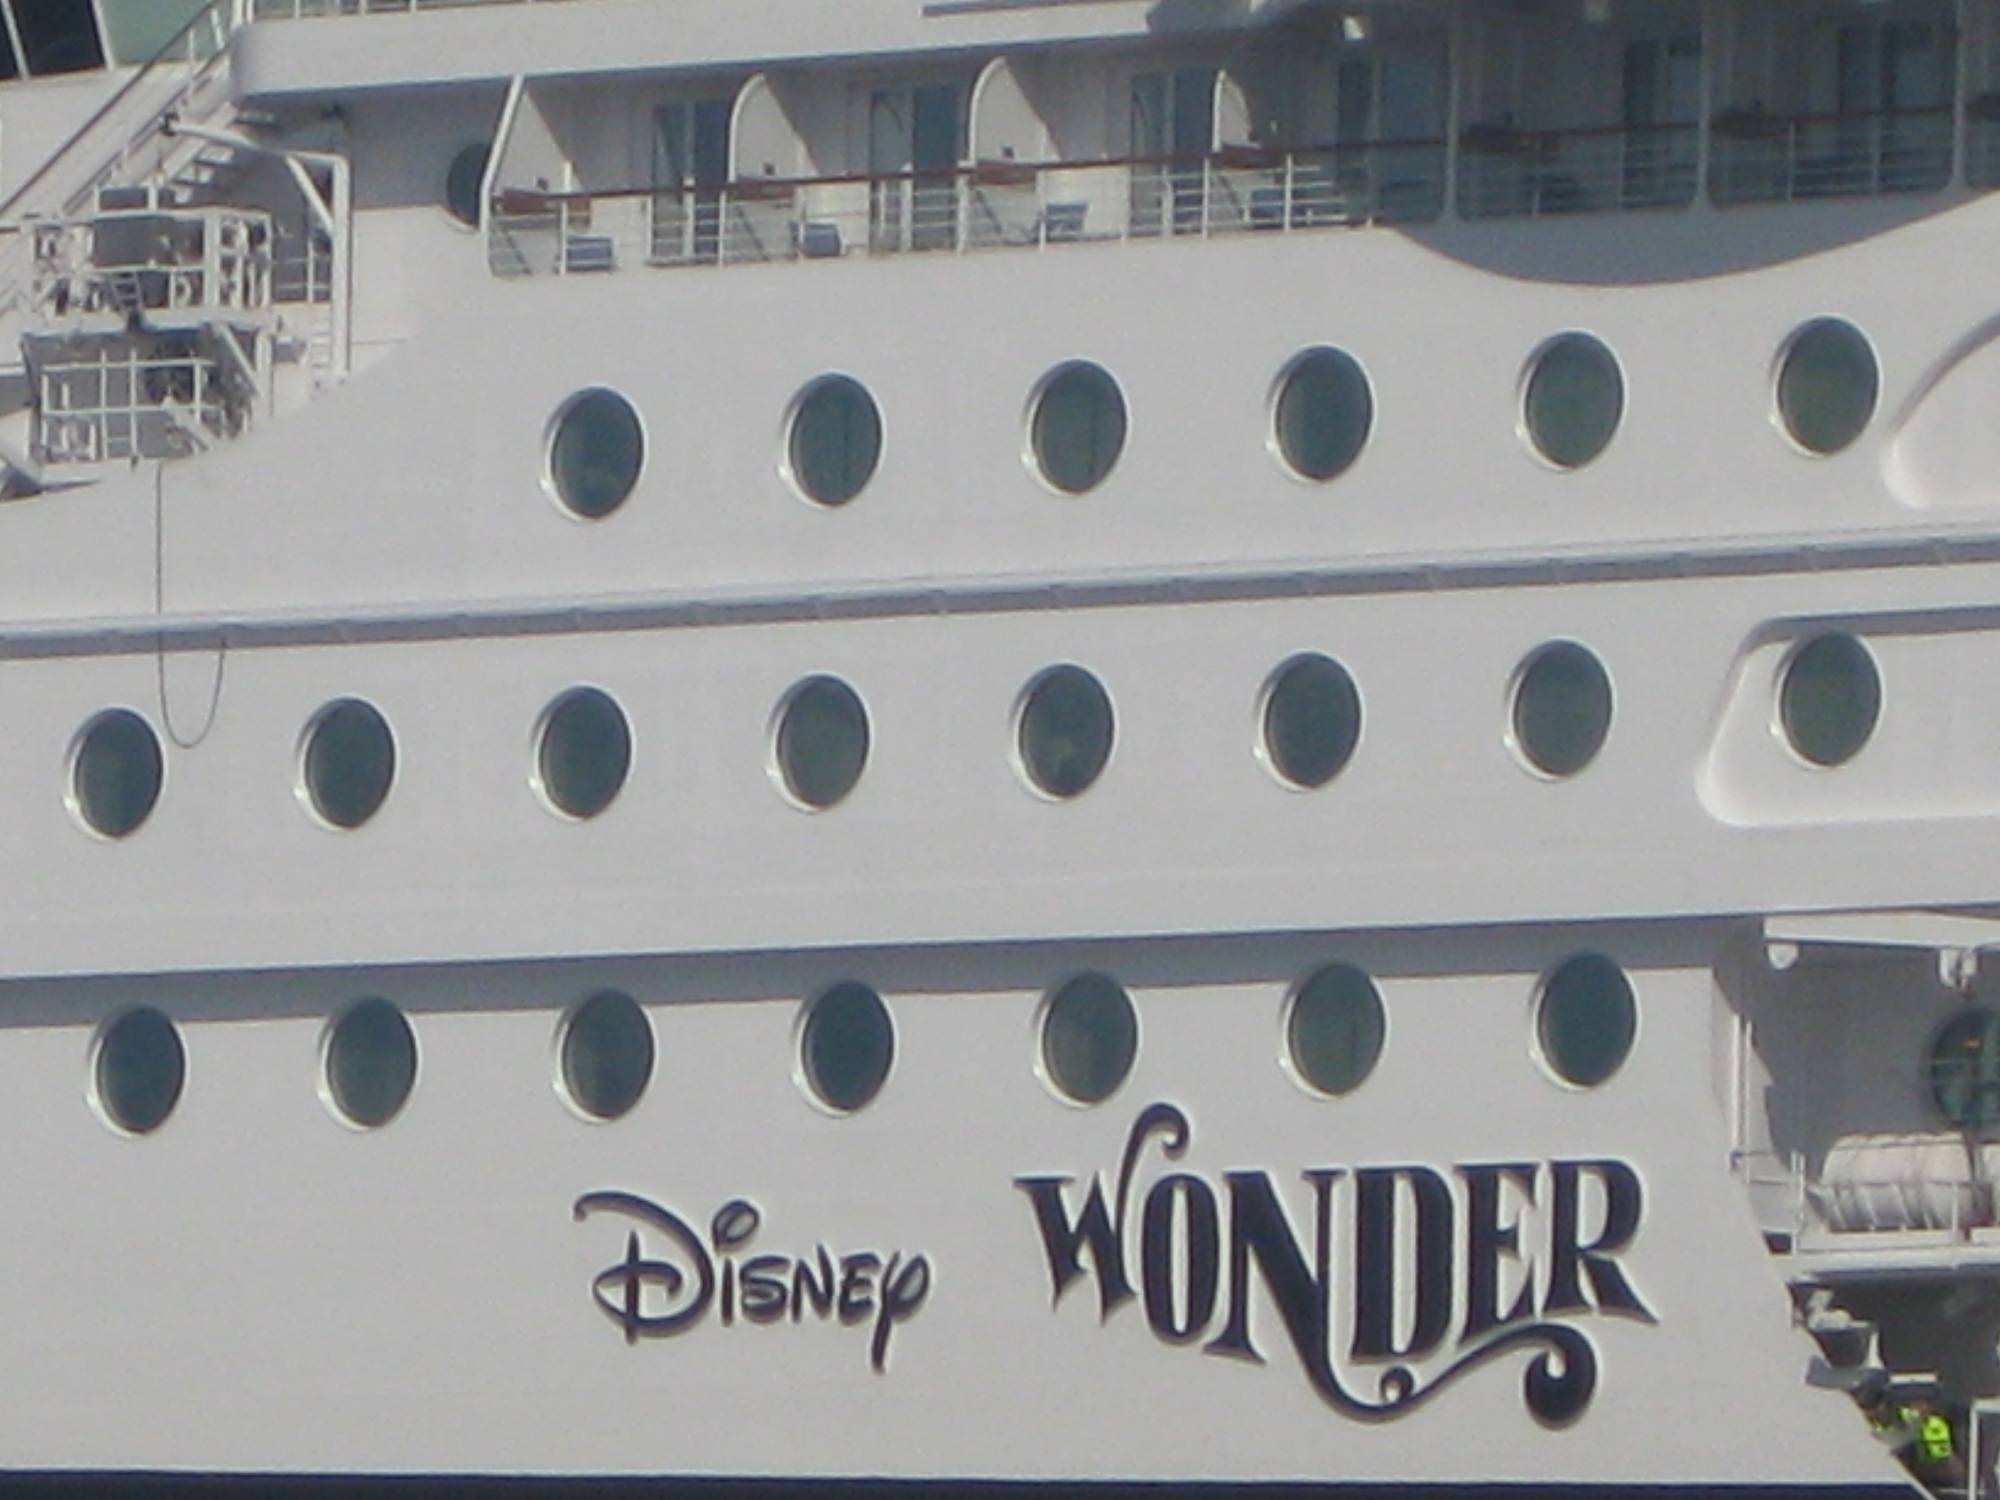 Wonder--Ship Name